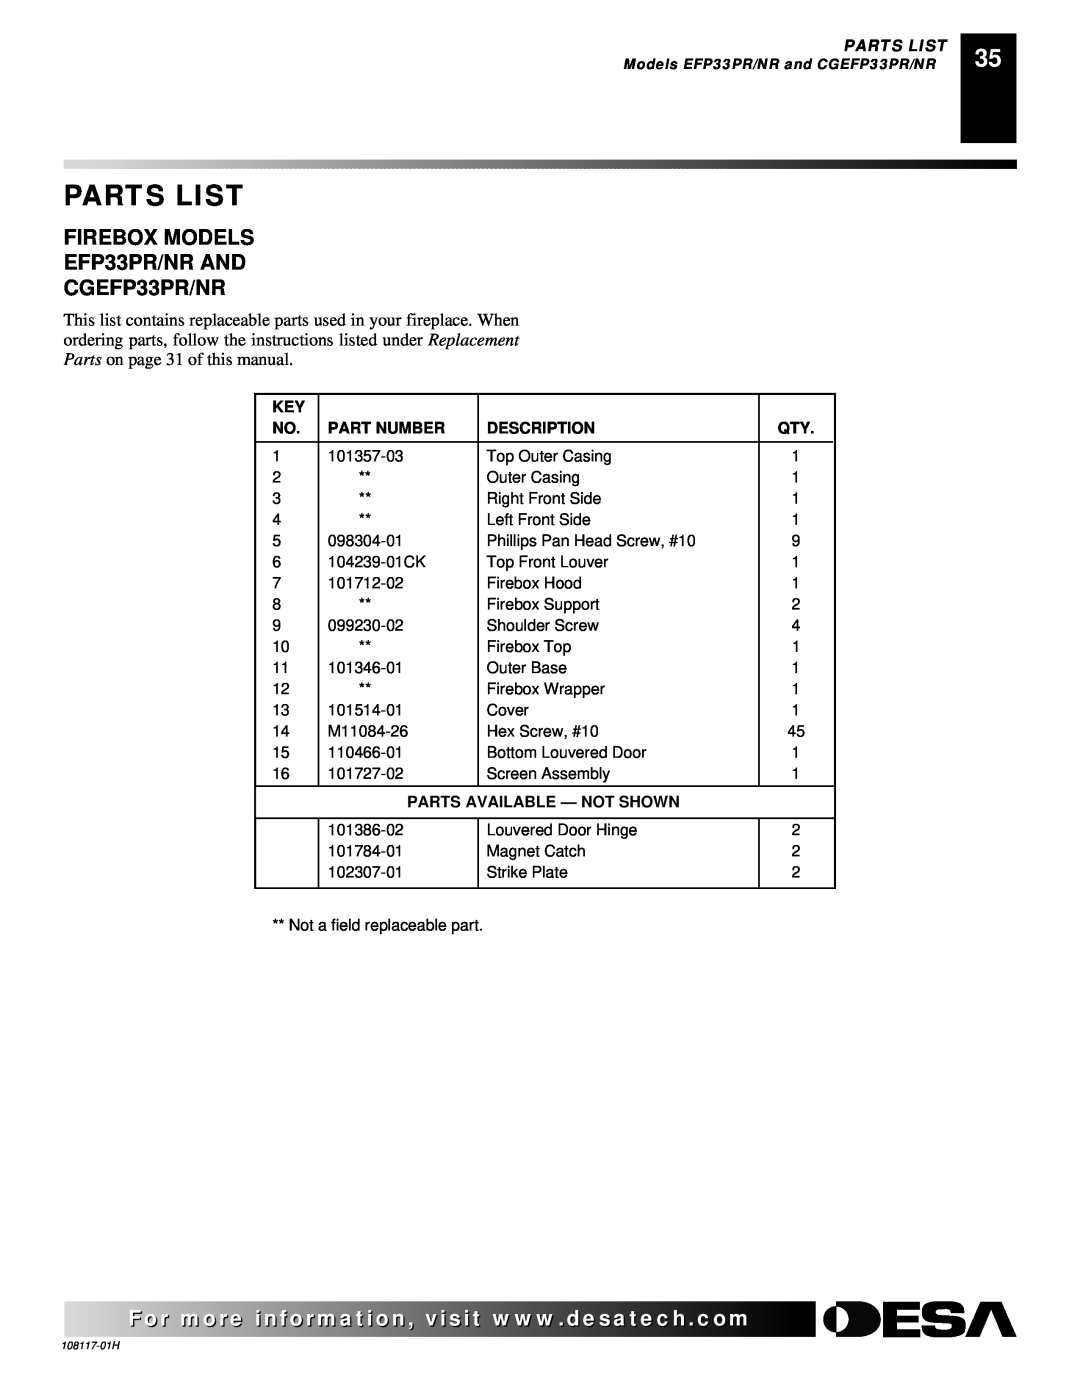 Desa FIREBOX MODELS EFP33PR/NR AND CGEFP33PR/NR, Parts List, Part Number, Description, Parts Available - Not Shown 